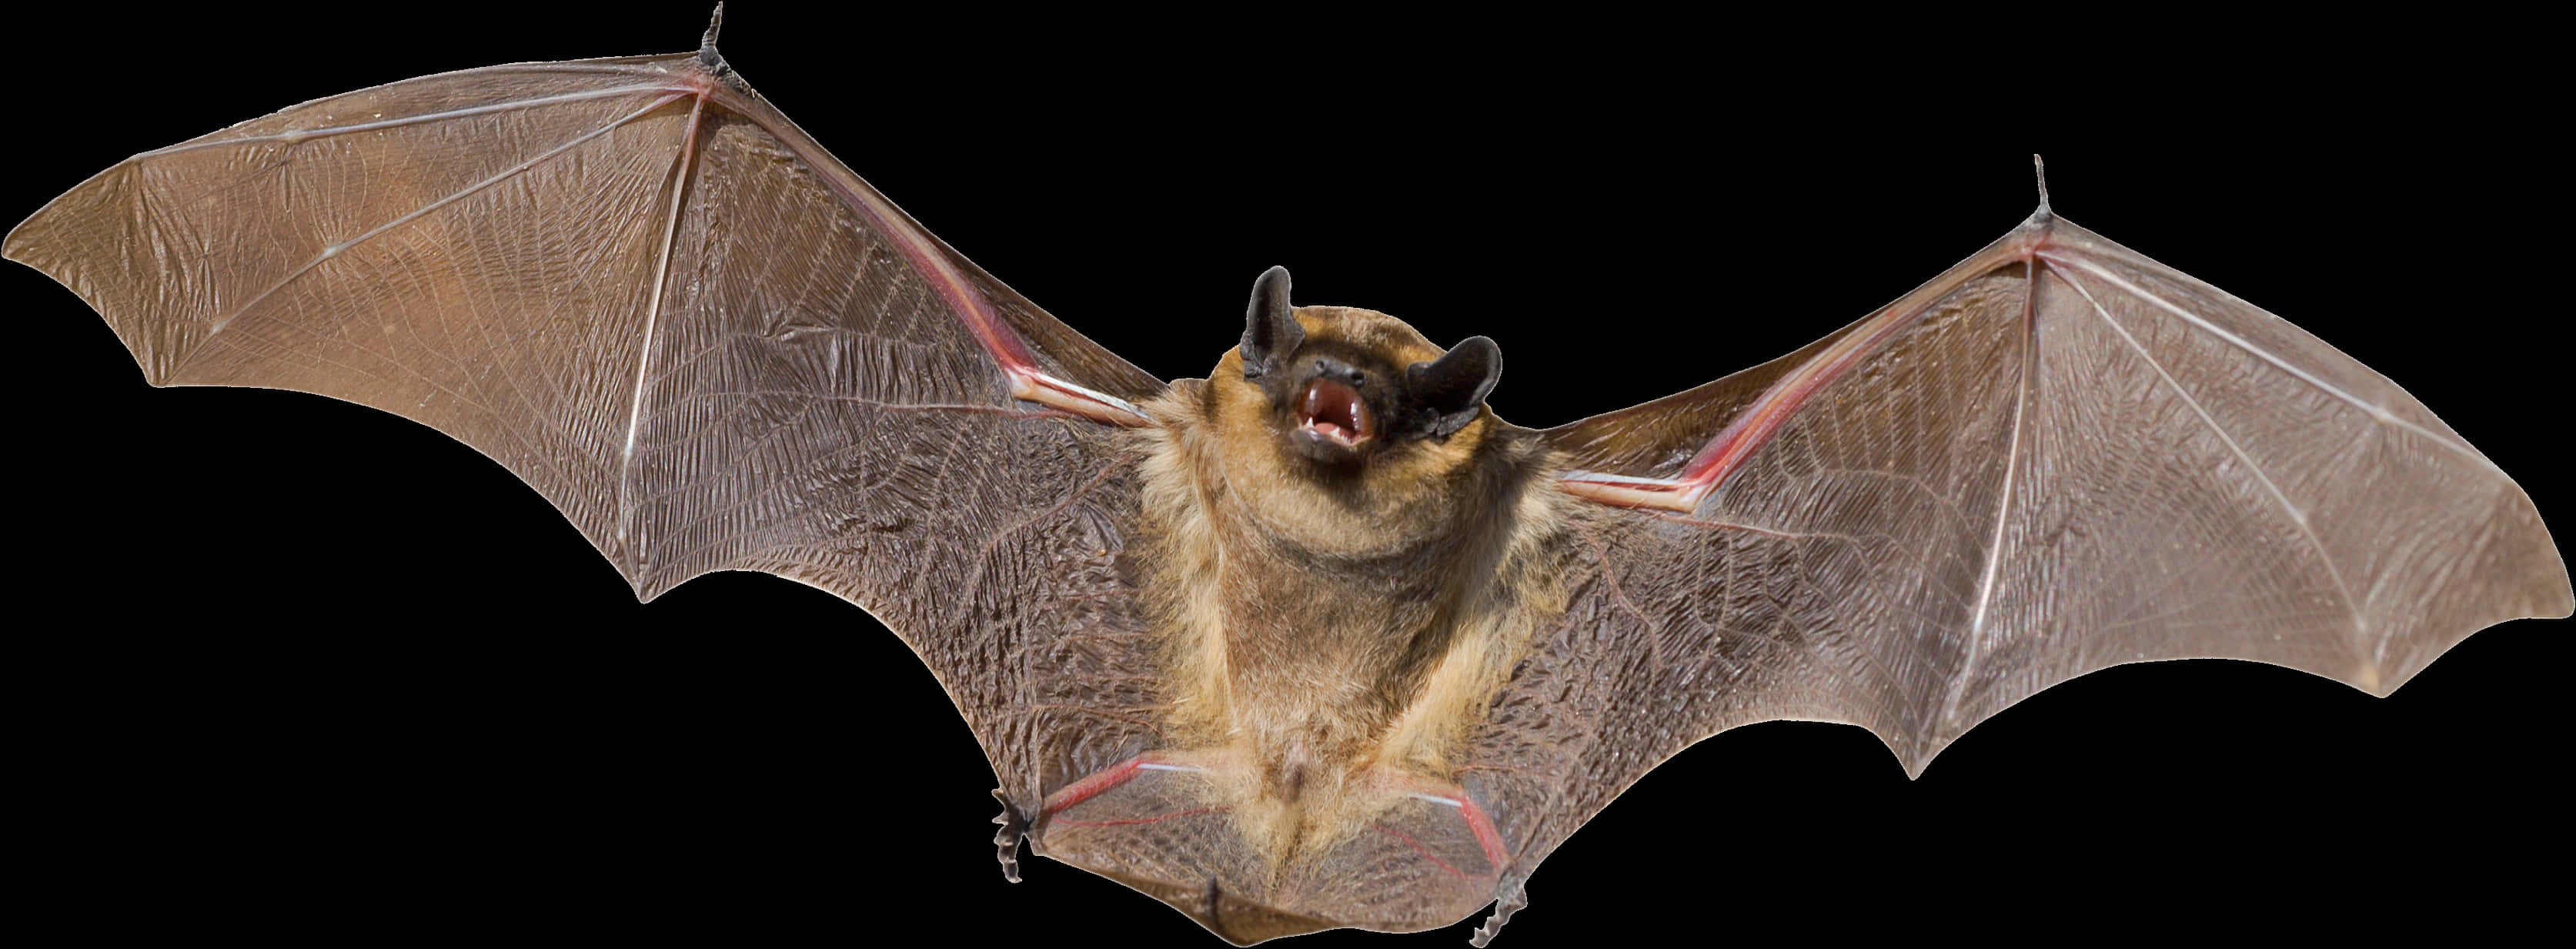 Flying Bat Black Background PNG